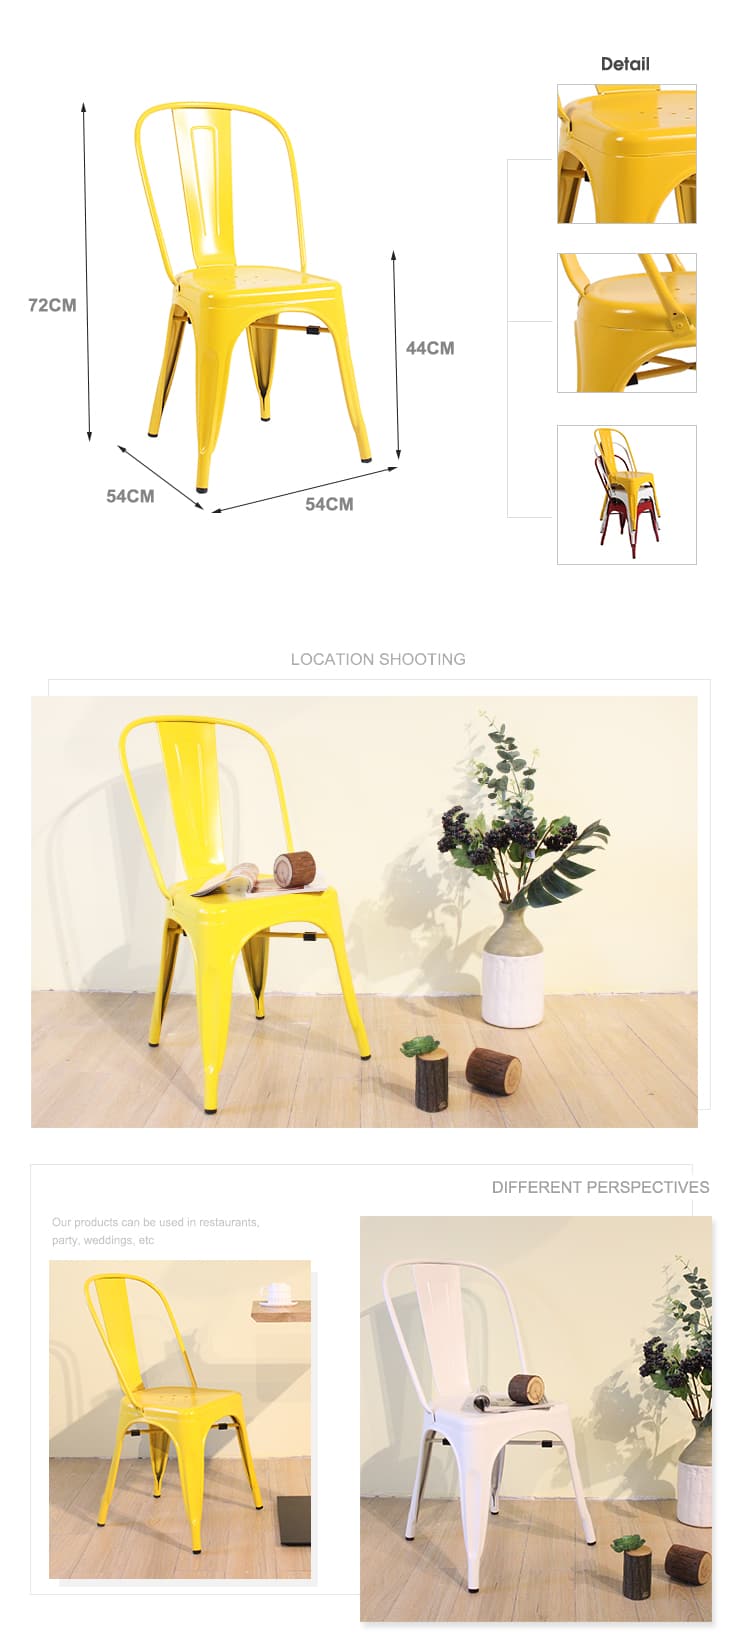 La sedia Tolix è un'icona del design d'arredo con l'accattivante sgabello giallo tolix